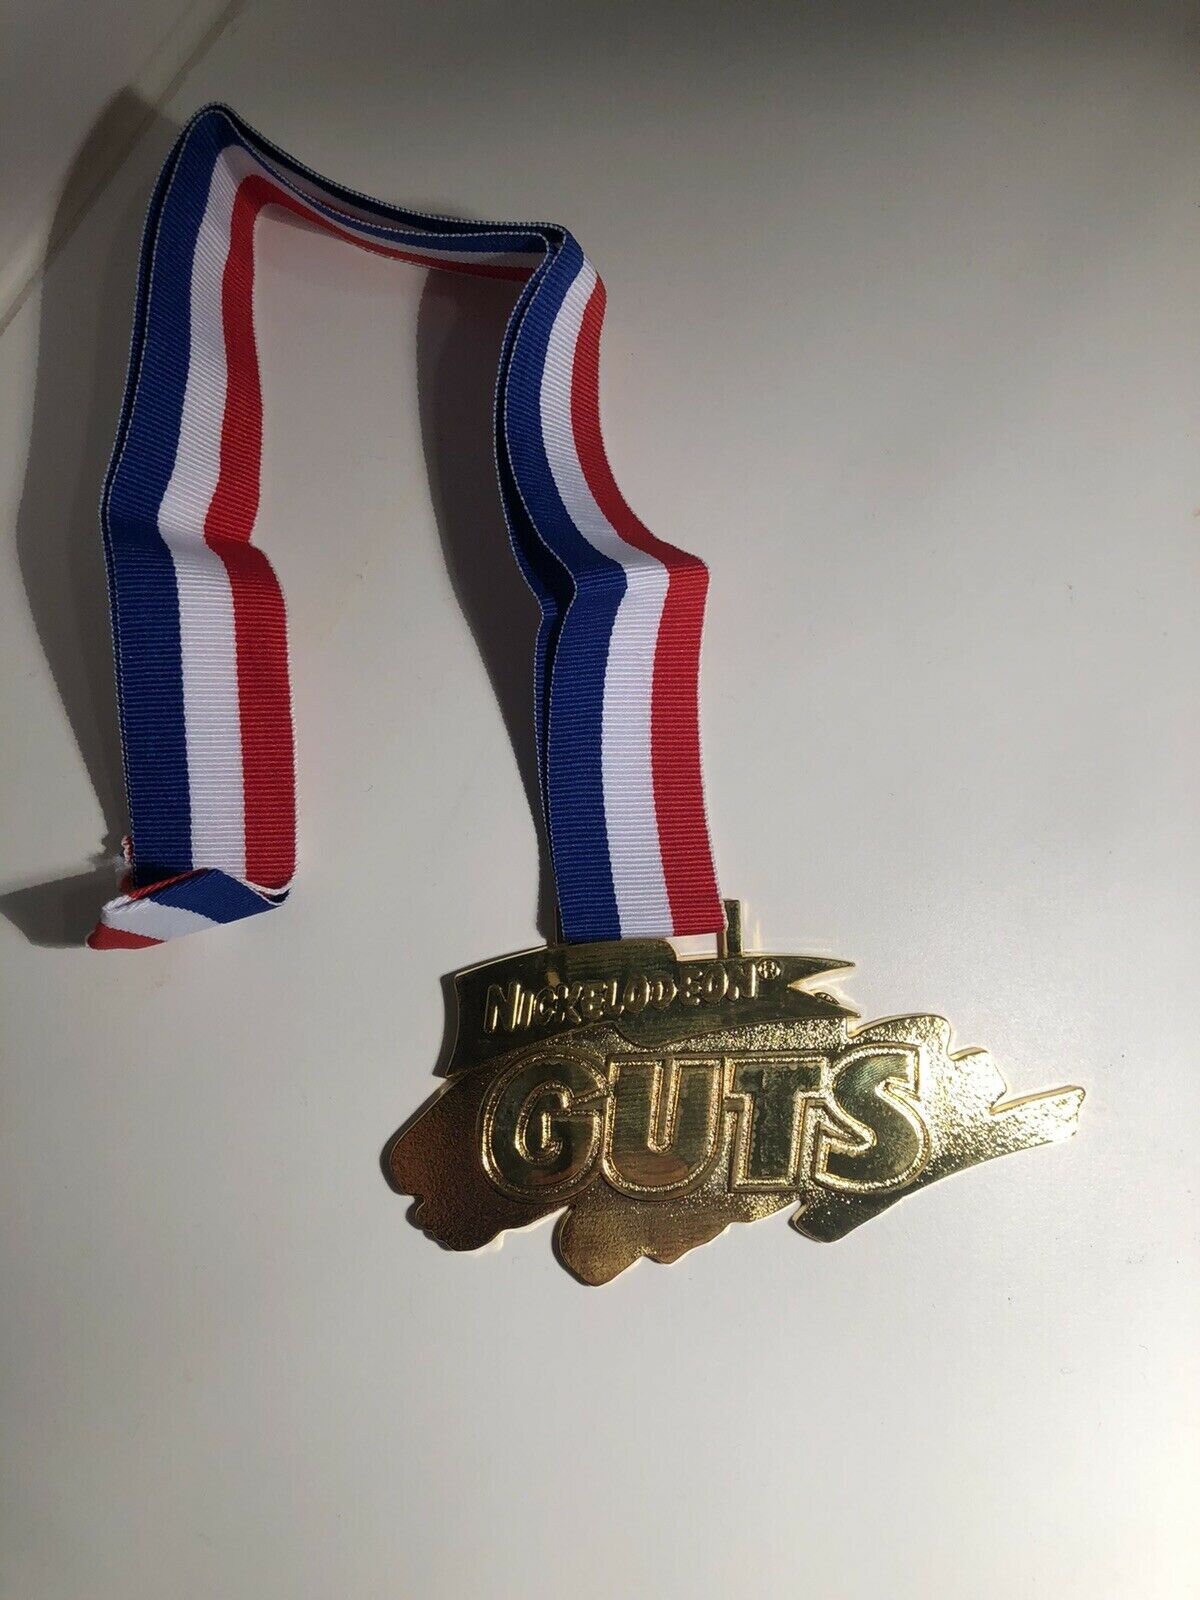 Nickelodeon Global Guts Medal Trophy | Etsy